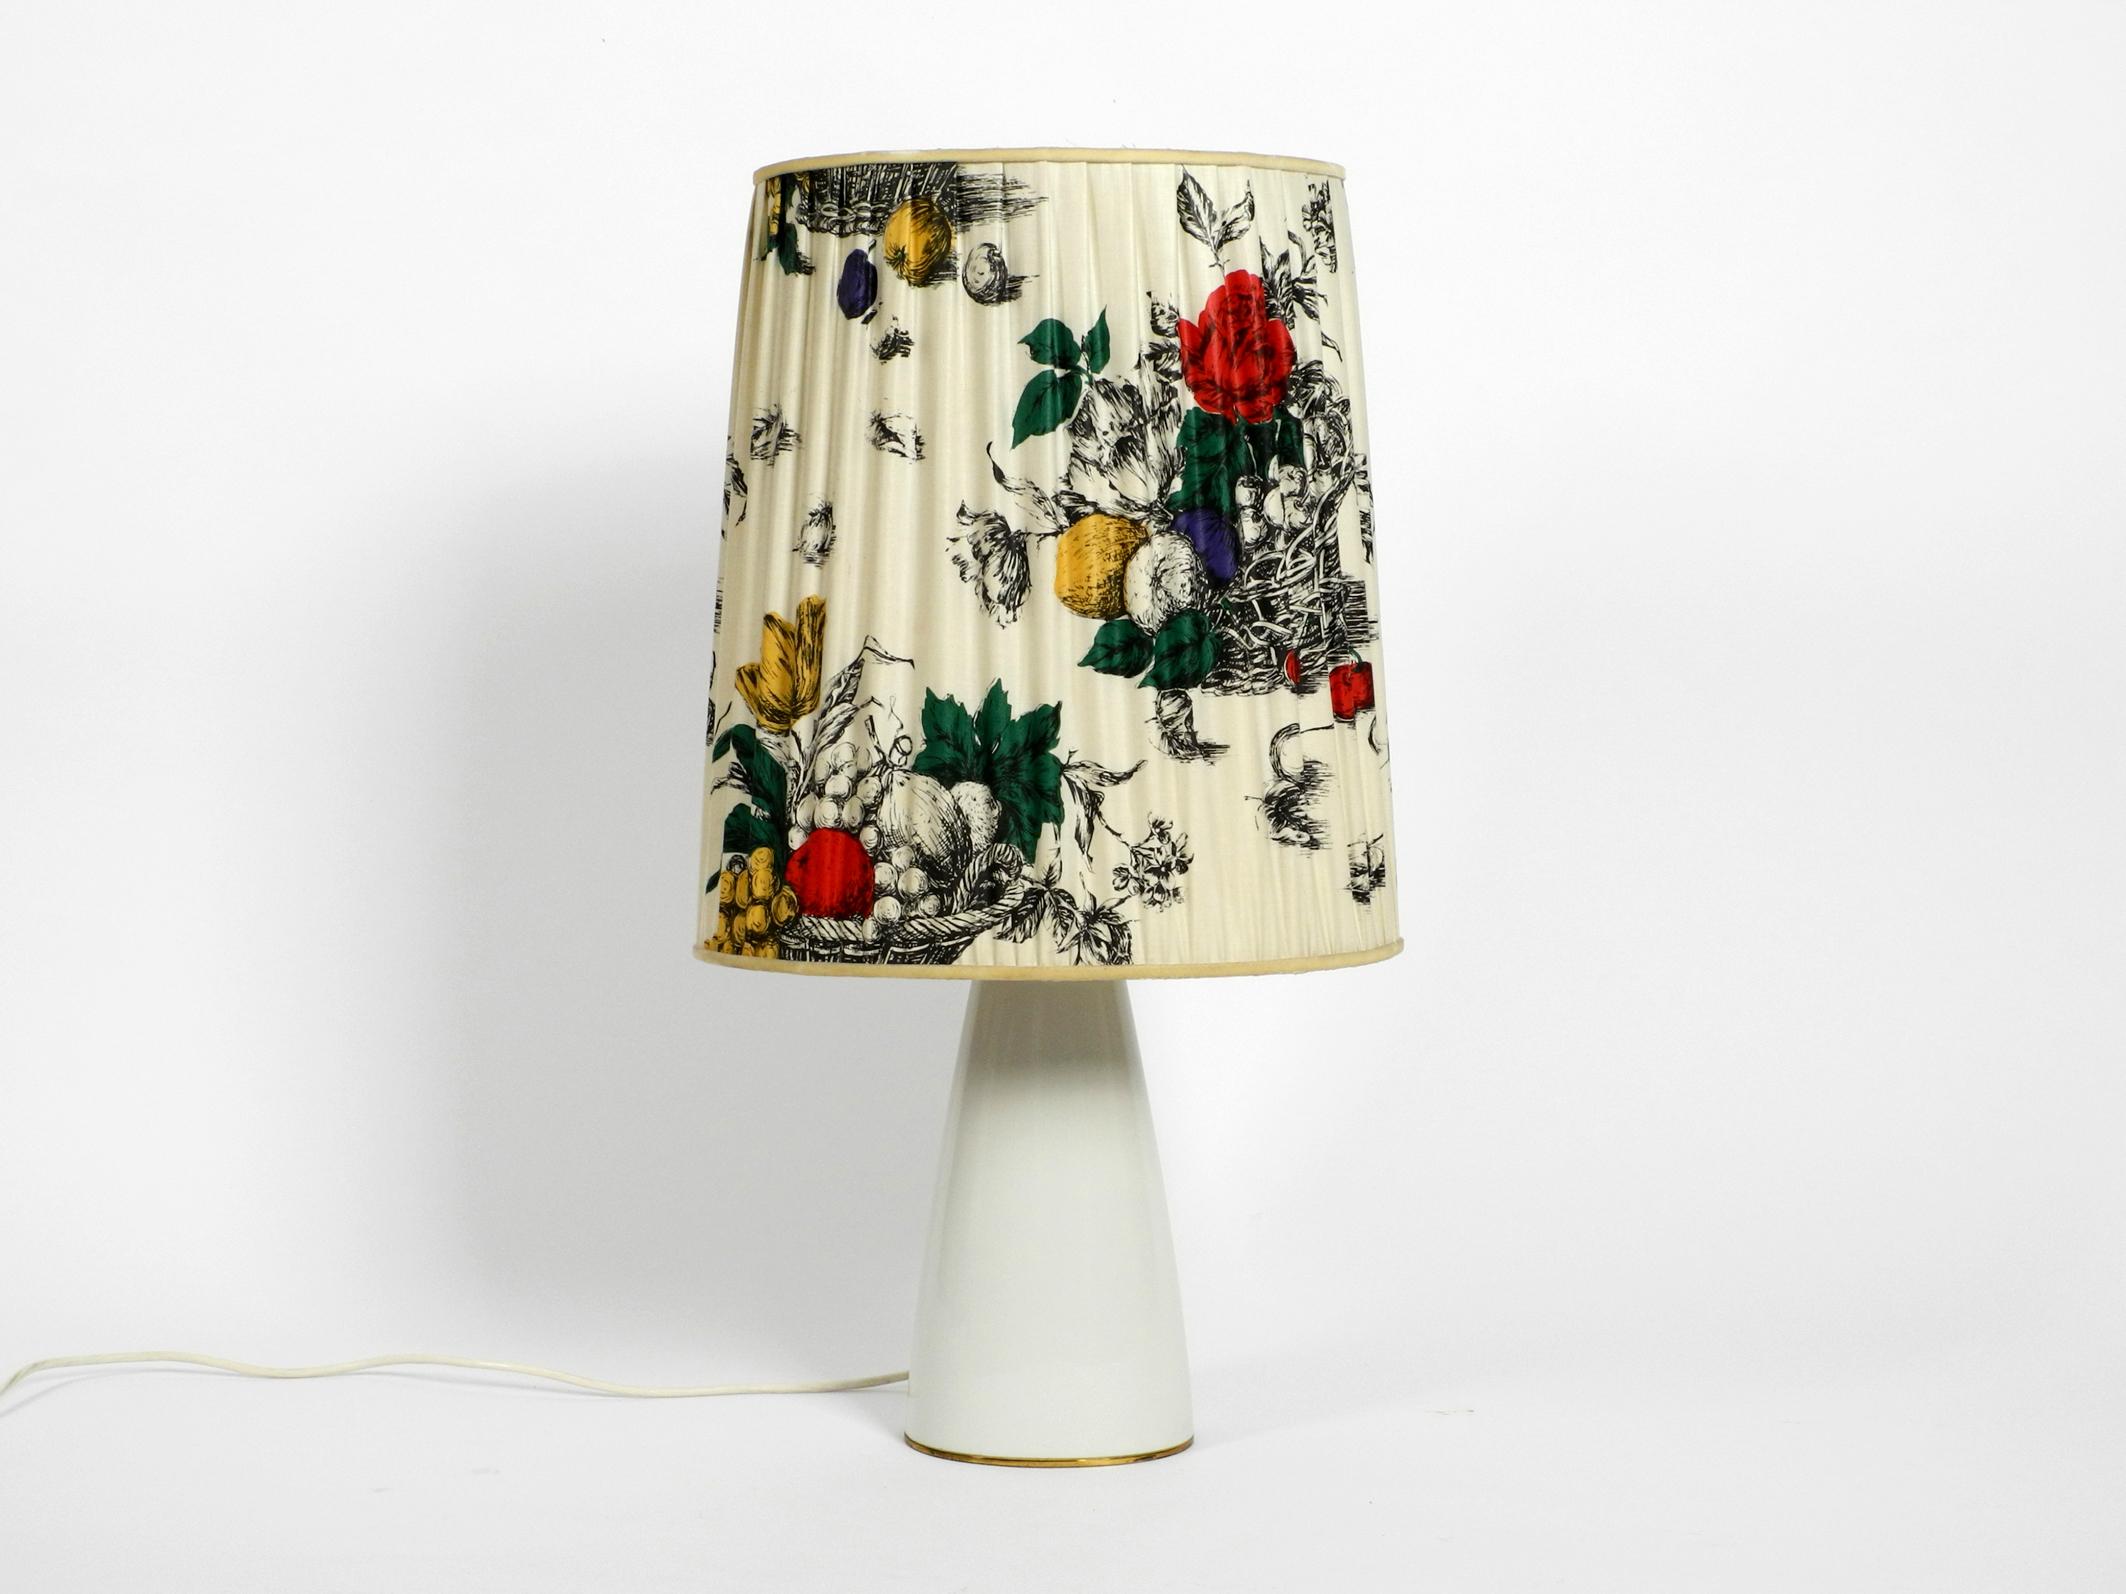 Grande et élégante lampe de table KPM des années 1960 avec pied en porcelaine et abat-jour en soie plissée.
Le fabricant est Königliche Porzellan-Manufaktur (KPM) Berlin. 
Conception très élégante et de haute qualité.
Le pied de la lampe est en